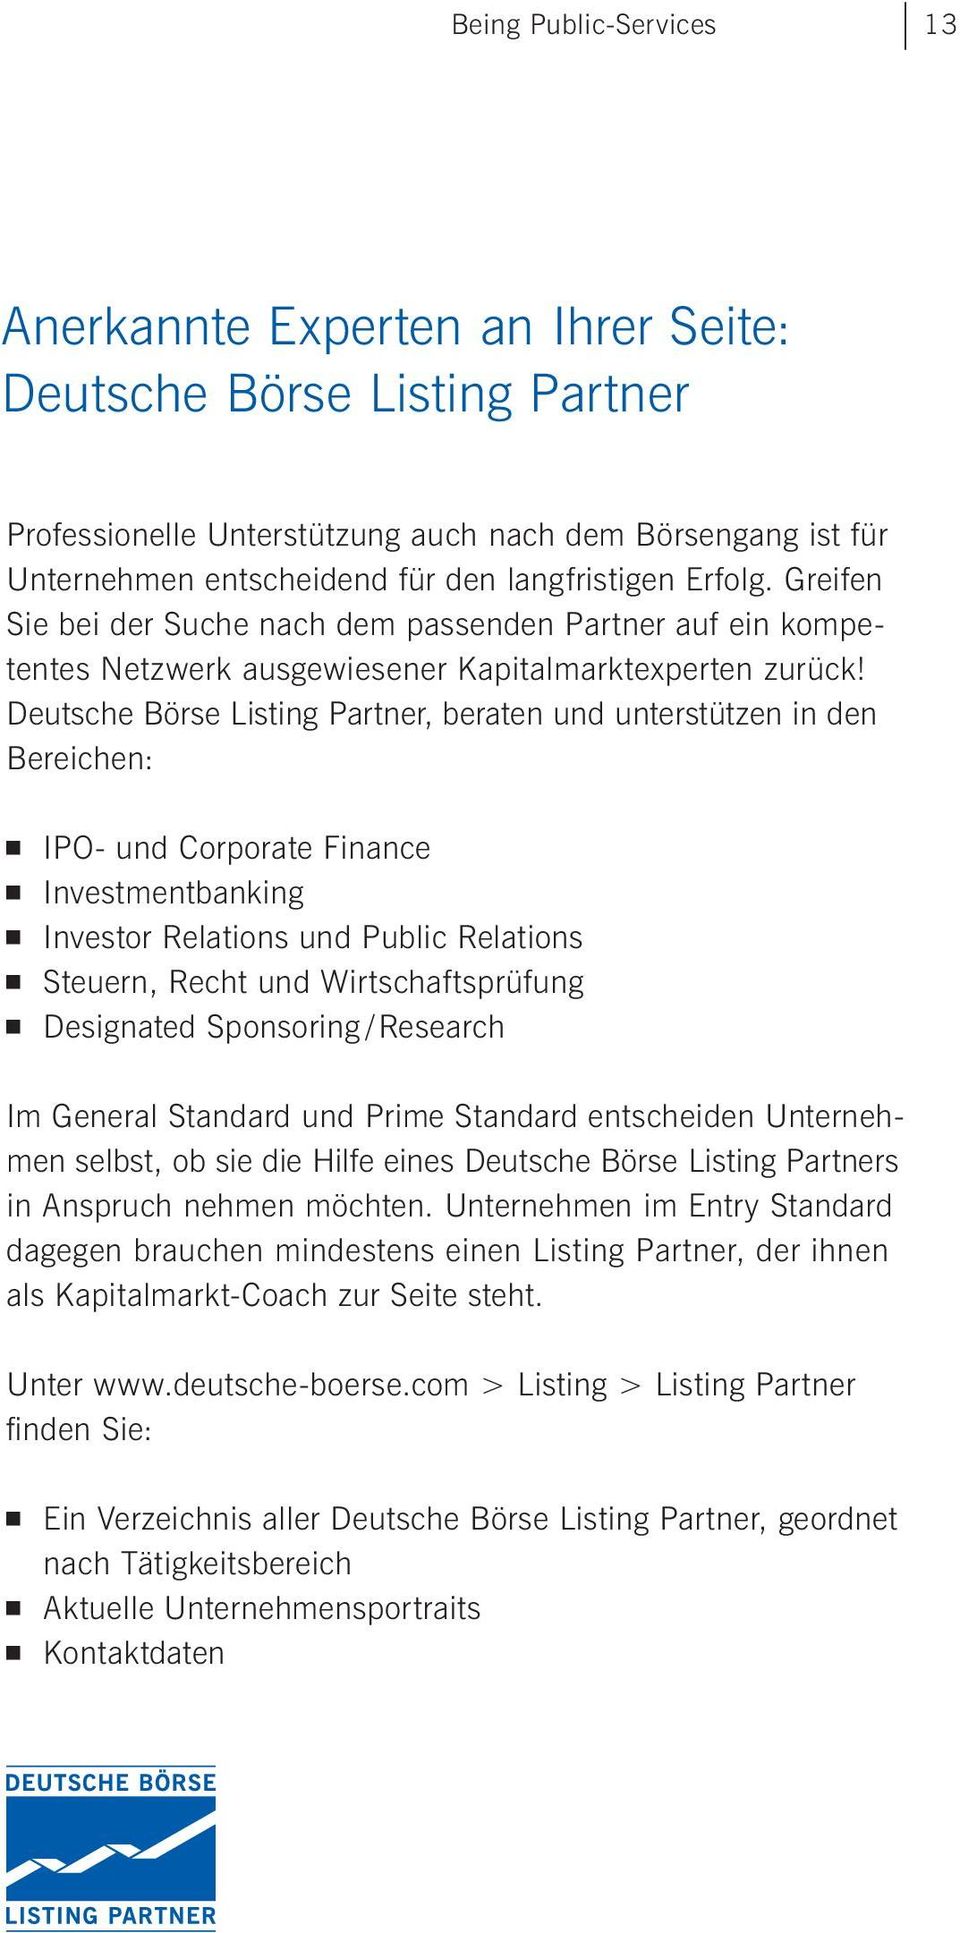 Deutsche Börse Listing Partner beraten und unterstützen in den Bereichen: IPO- und Corporate Finance Investmentbanking Investor Relations und Public Relations Steuern, Recht und Wirtschaftsprüfung